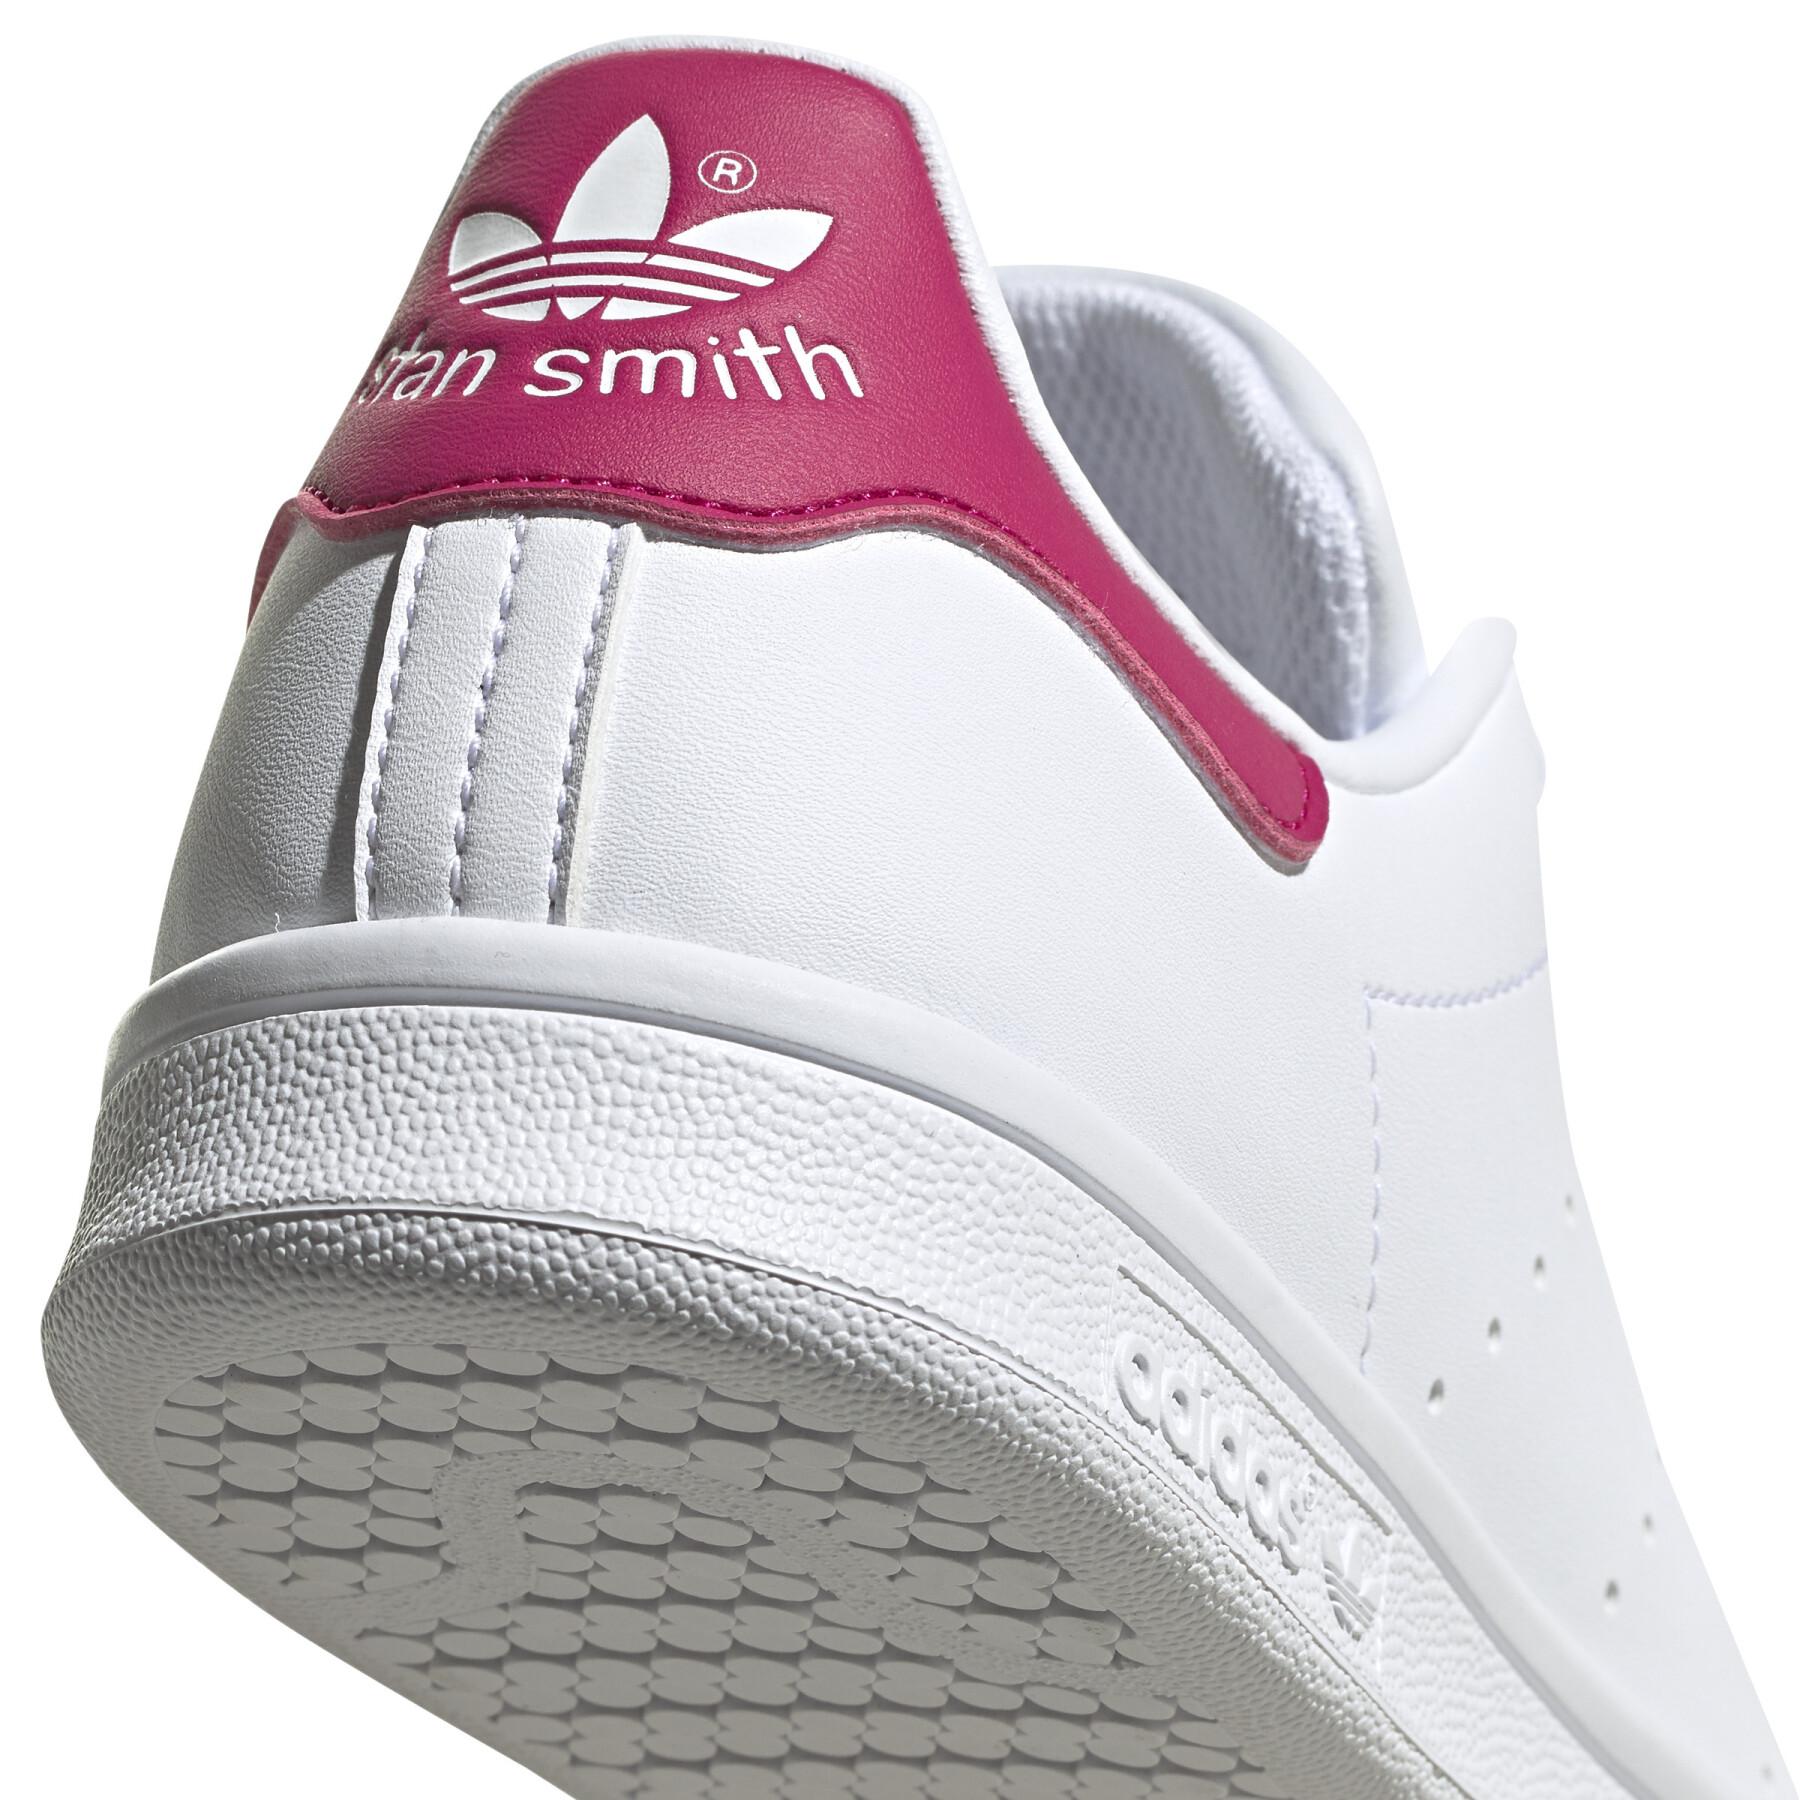 Trenerzy dziecięcy adidas Originals Stan Smith